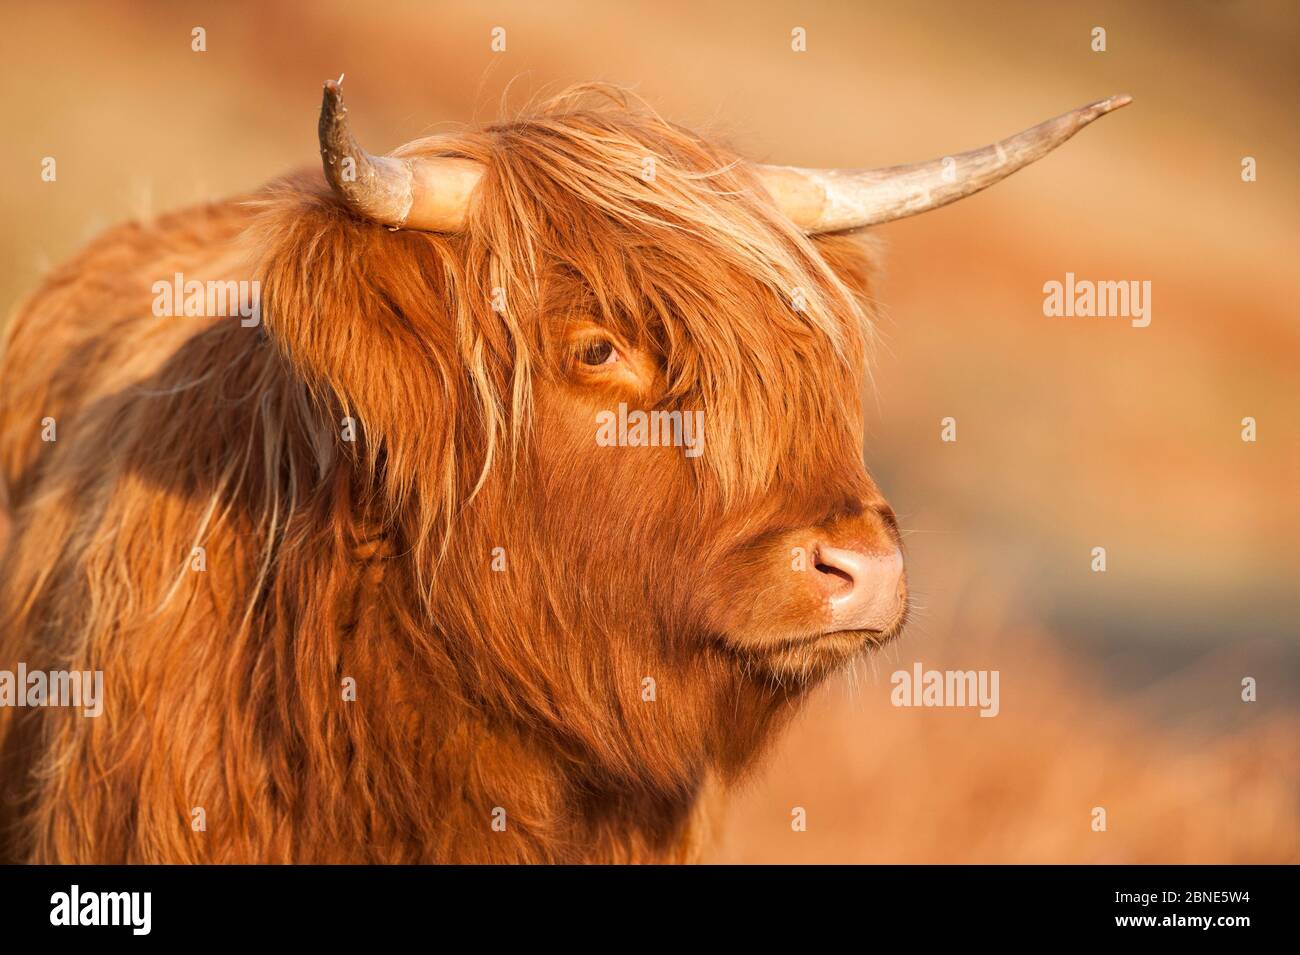 Highland cow portrait, Mull, Scotland, UK, January. Stock Photo